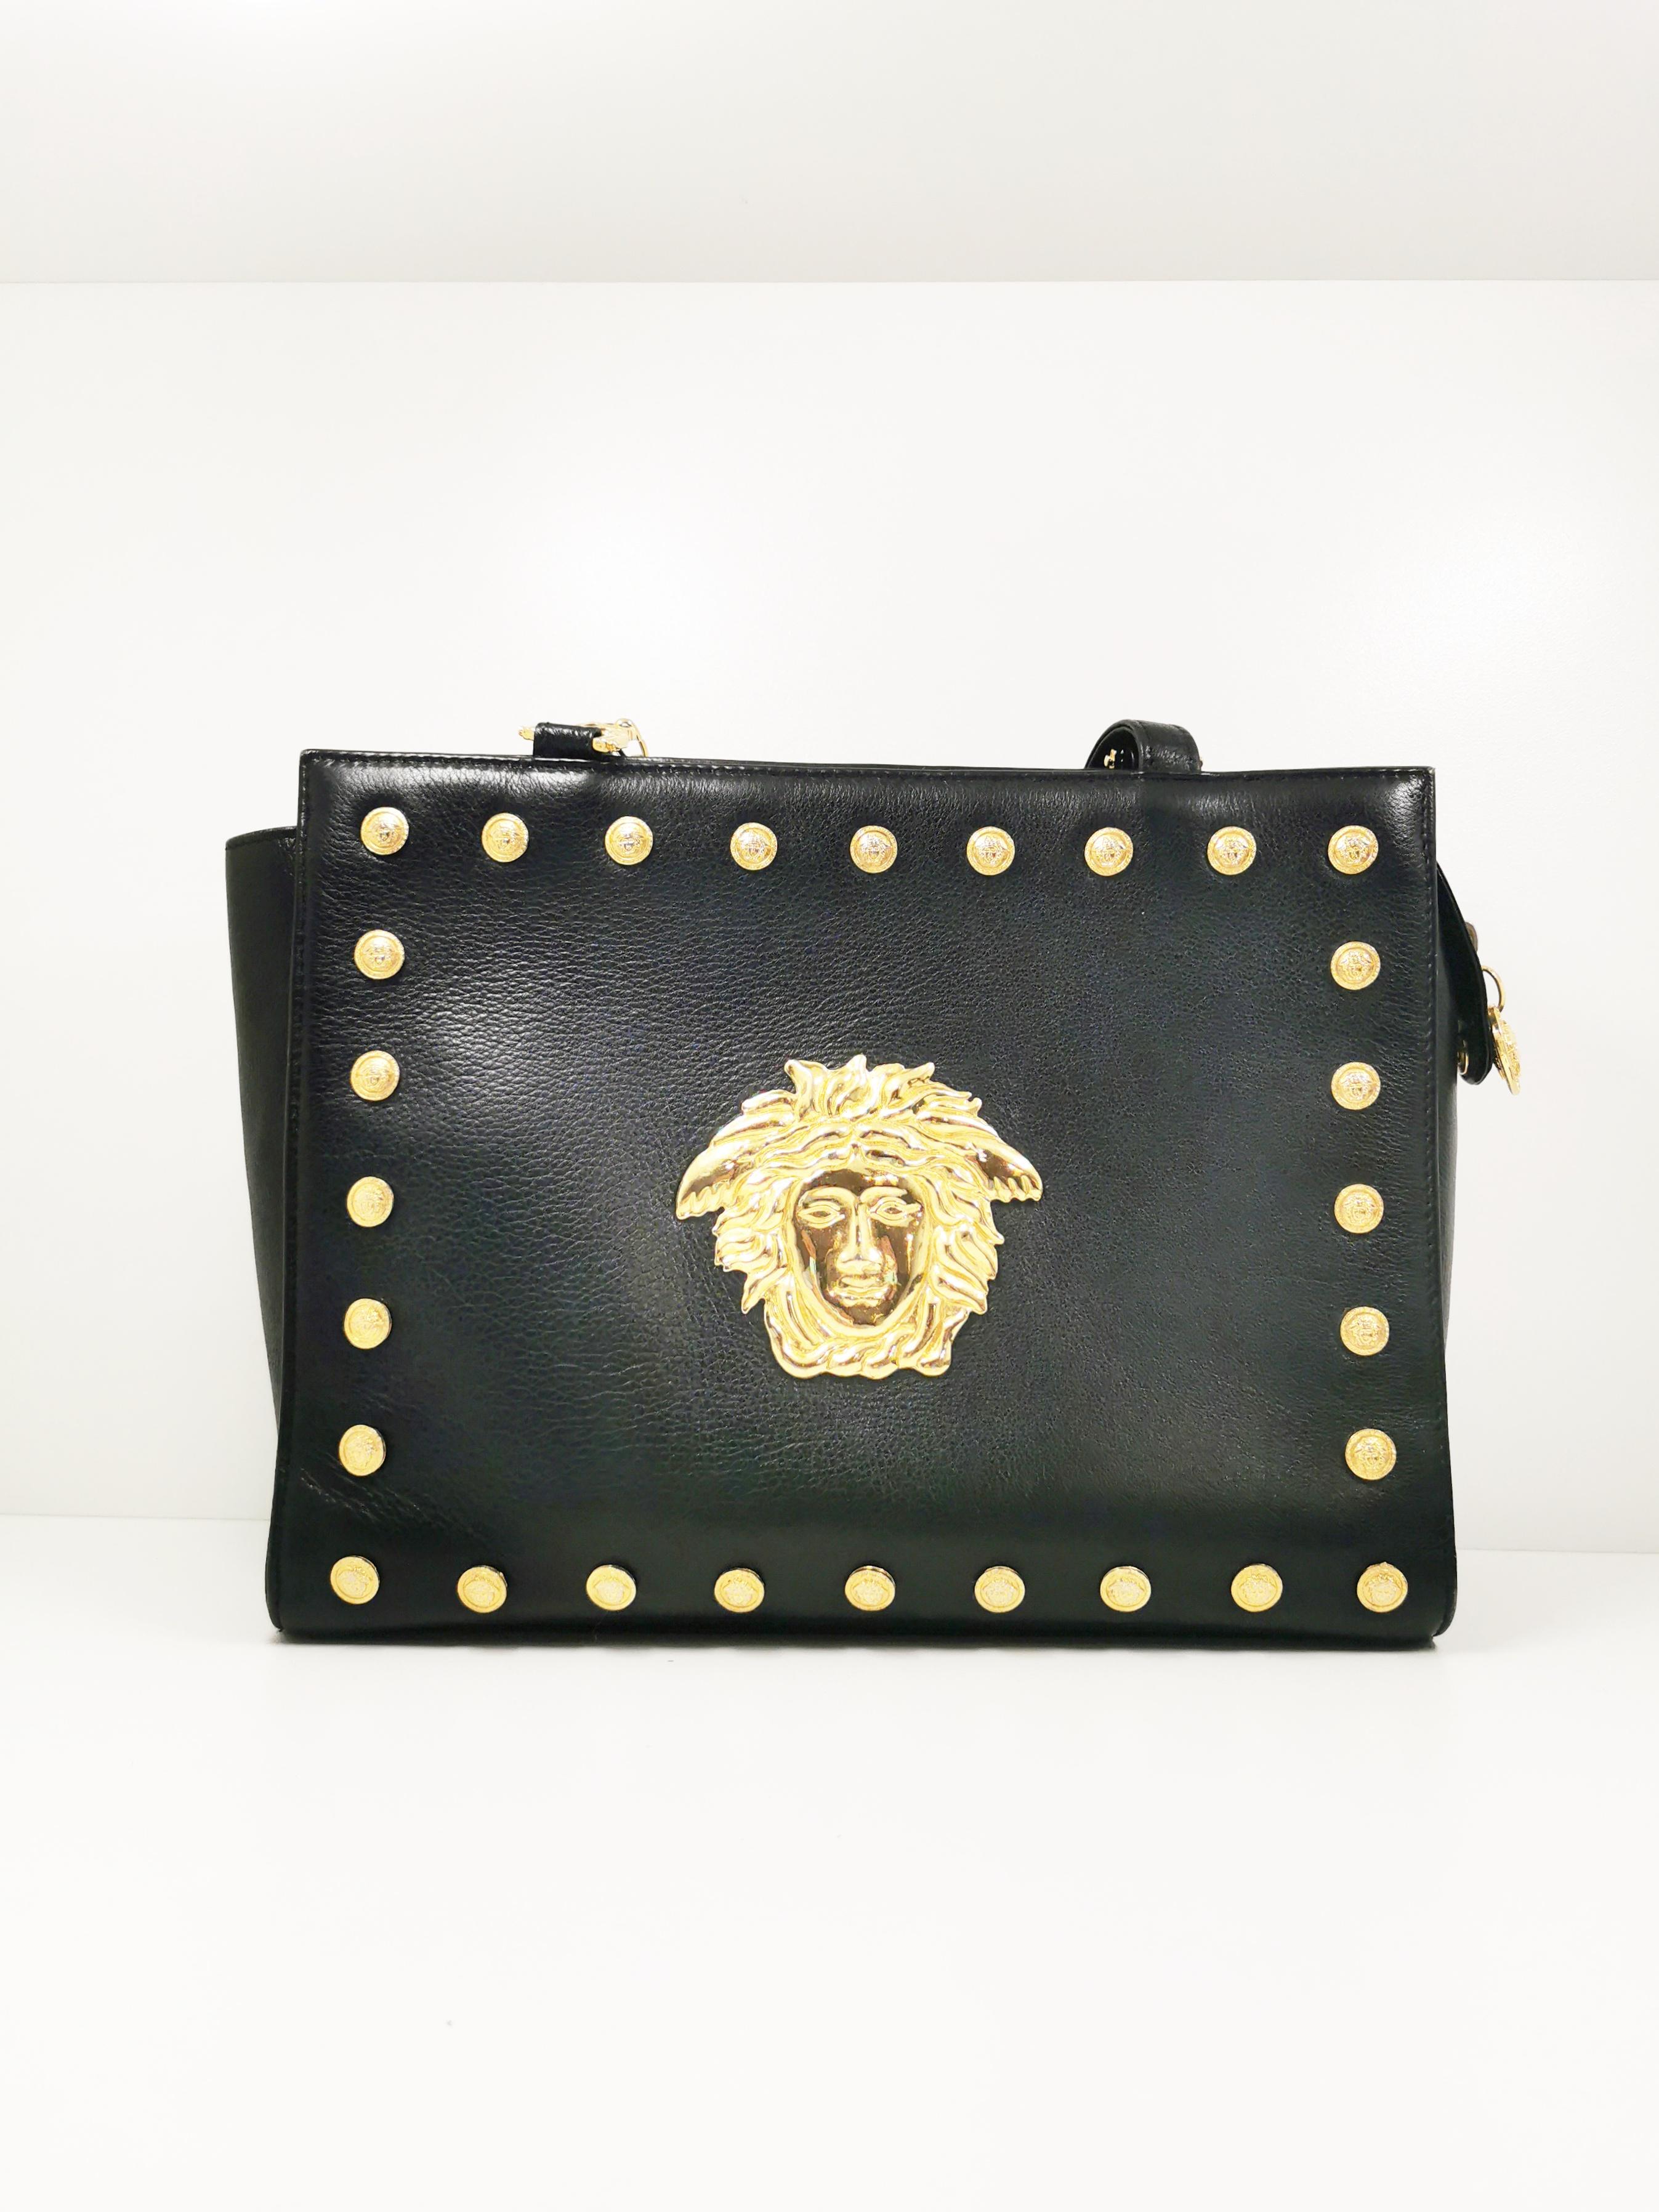 Die Gianni Versace Signature Medusa Head Gold Medallion Shoulder Bag aus den 1990er Jahren ist eine wahre Ikone der Modegeschichte. Dieses exquisite Accessoire fängt die Essenz der kühnen und glamourösen Designästhetik von Gianni Versace ein und